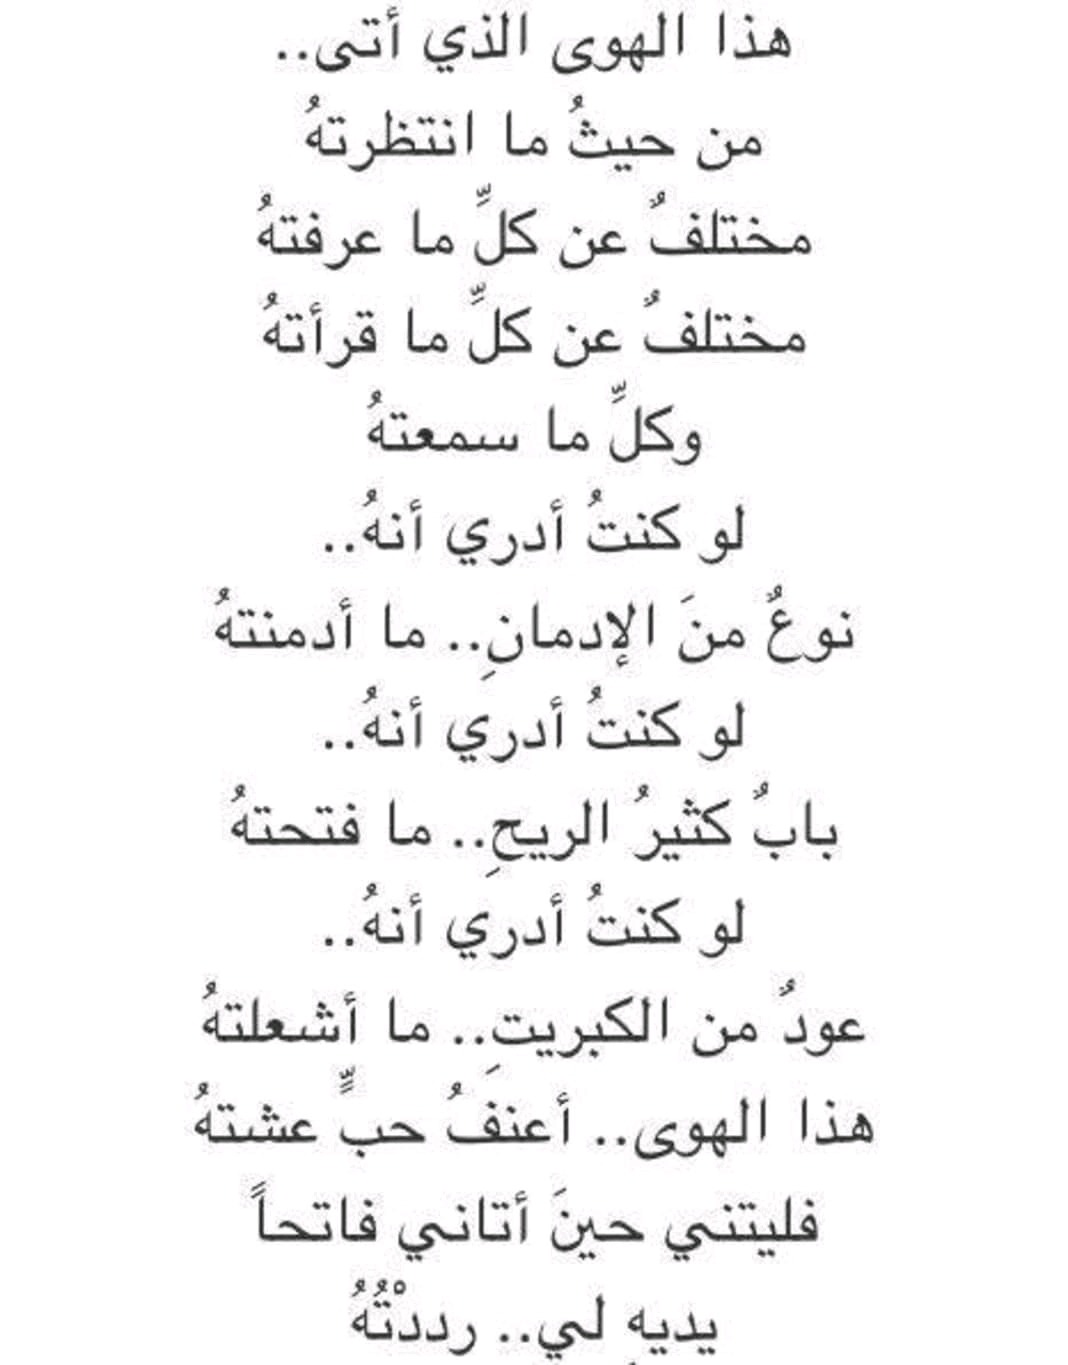 اشعار غزل حب وهيام اقتباسات من روائع الشعر العربي